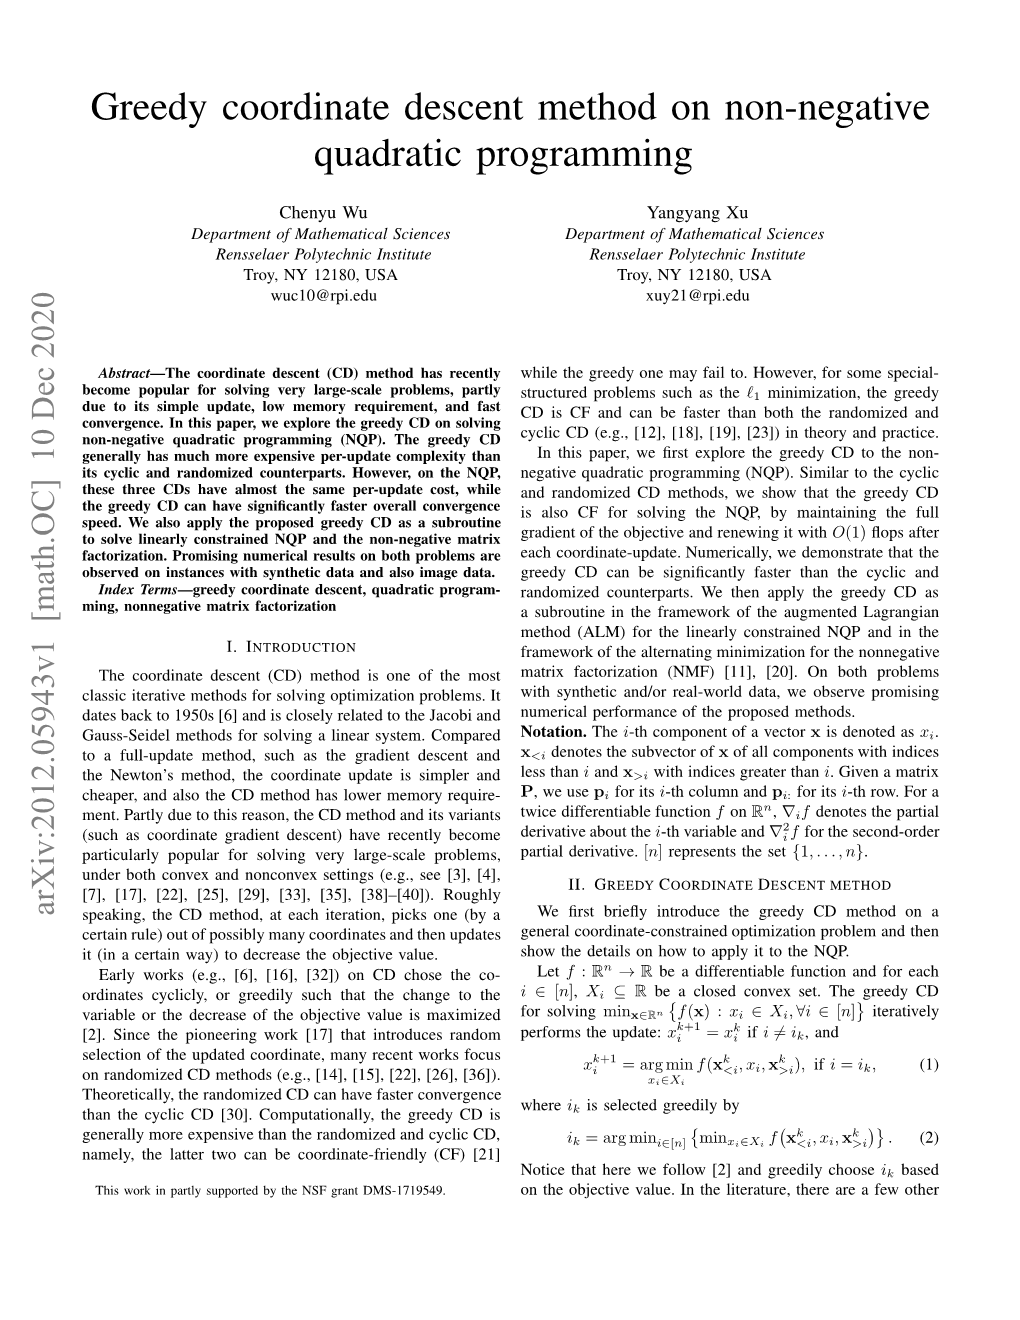 Greedy Coordinate Descent Method on Non-Negative Quadratic Programming